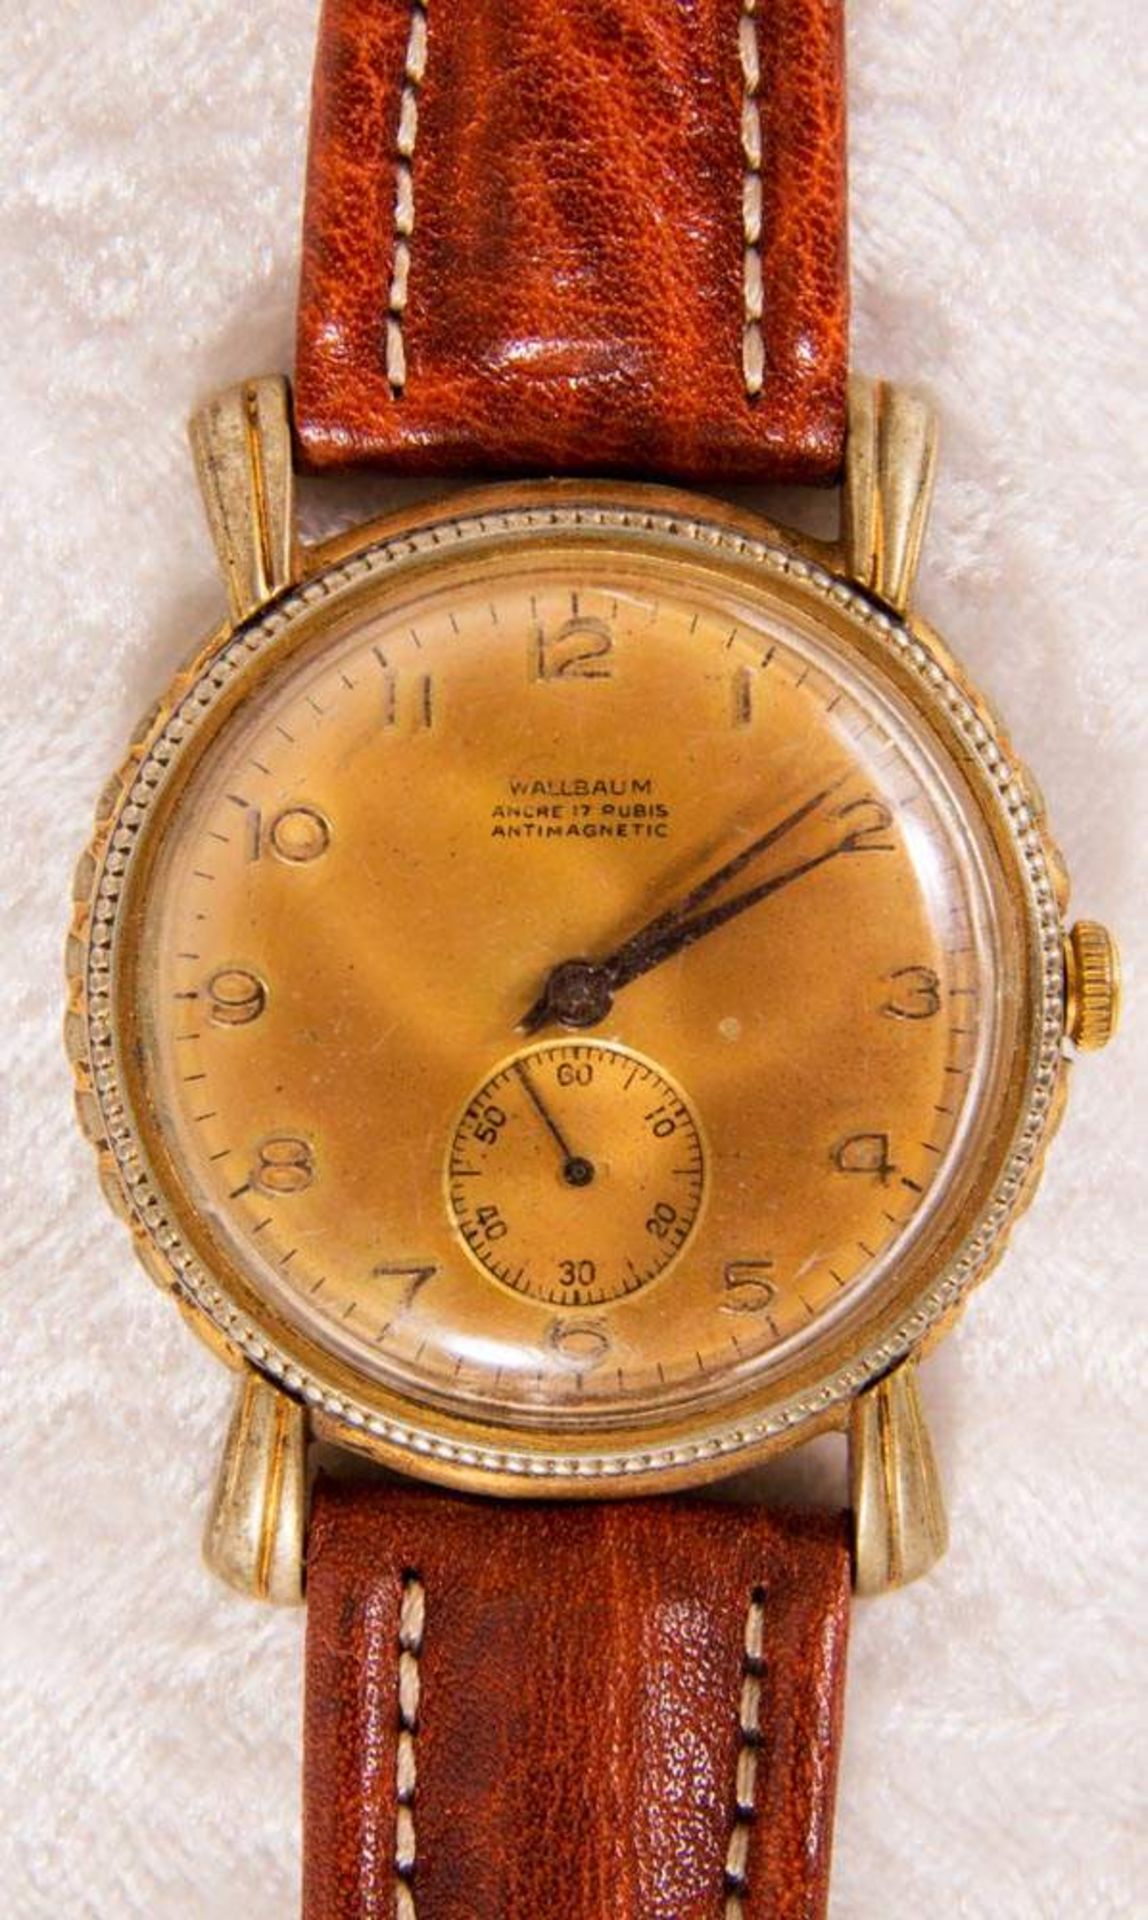 "WALLBAUM"- Herrenarmbanduhr. Eine Tochter-Uhrenmarke der "Schlup & Co. AG" welche auch Rado und